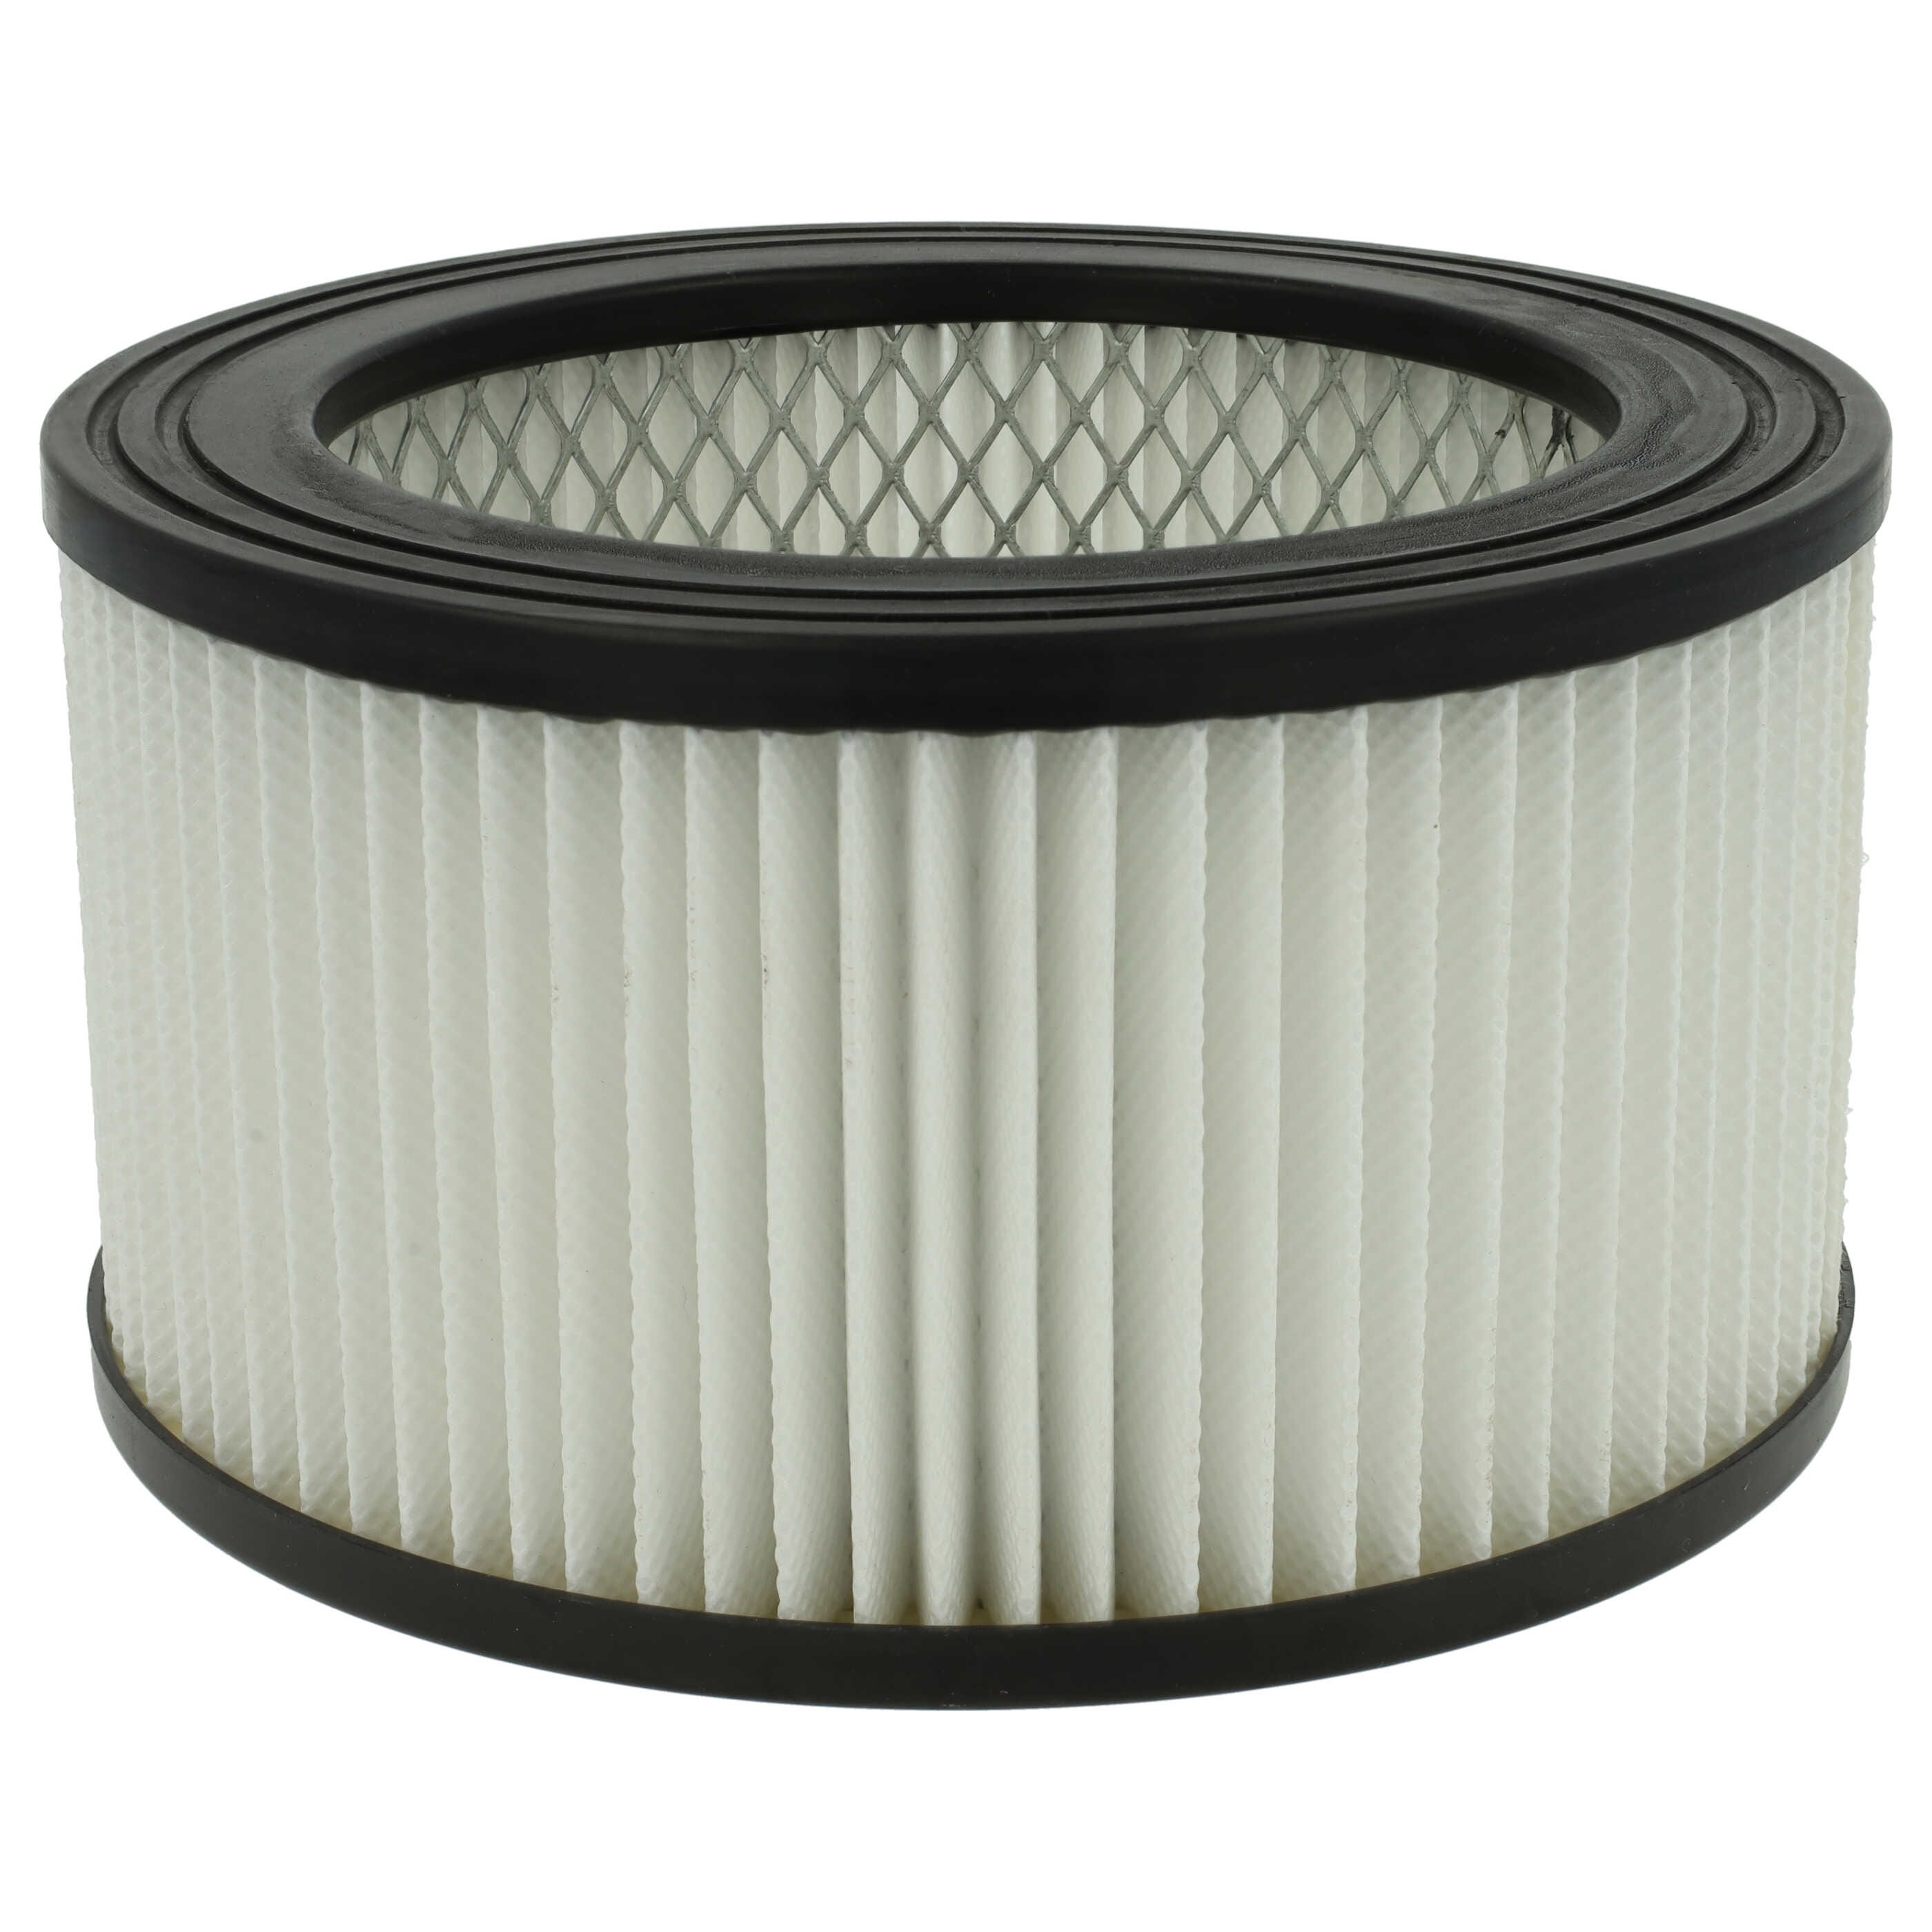 Vhbw filtro compatibile con aspiracenere nrj802 18l/80860 1200w aspiracenere  - Filtro HEPA anallergico